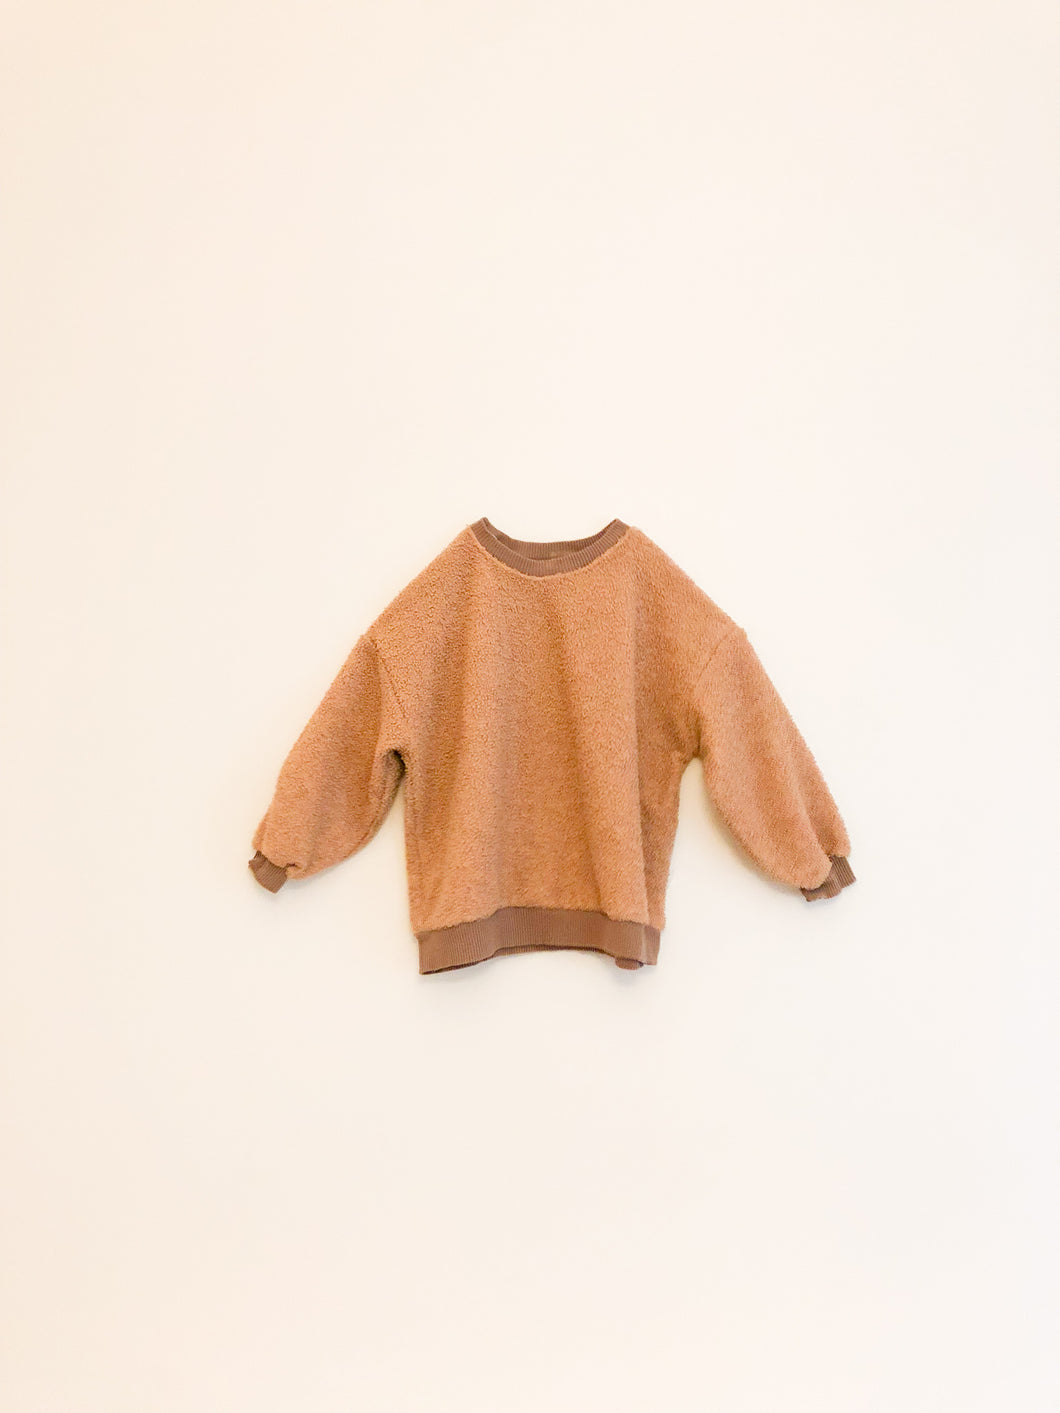 Bouclé Sweater